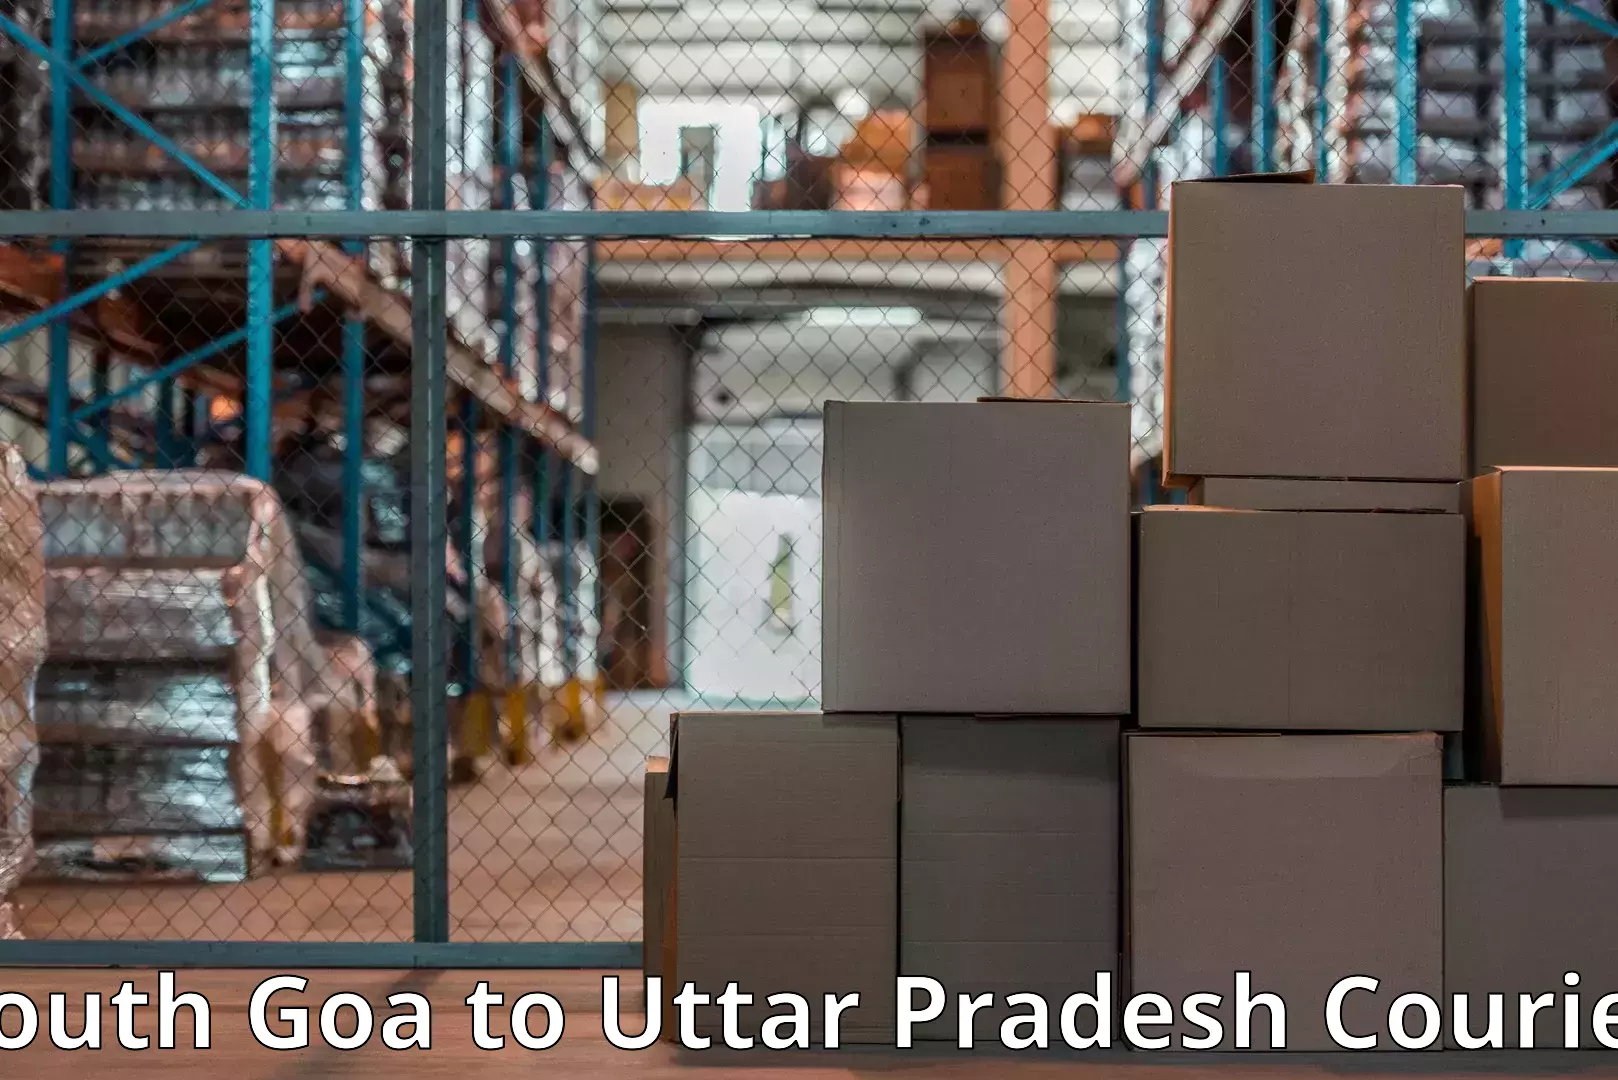 Home relocation experts South Goa to Uttar Pradesh